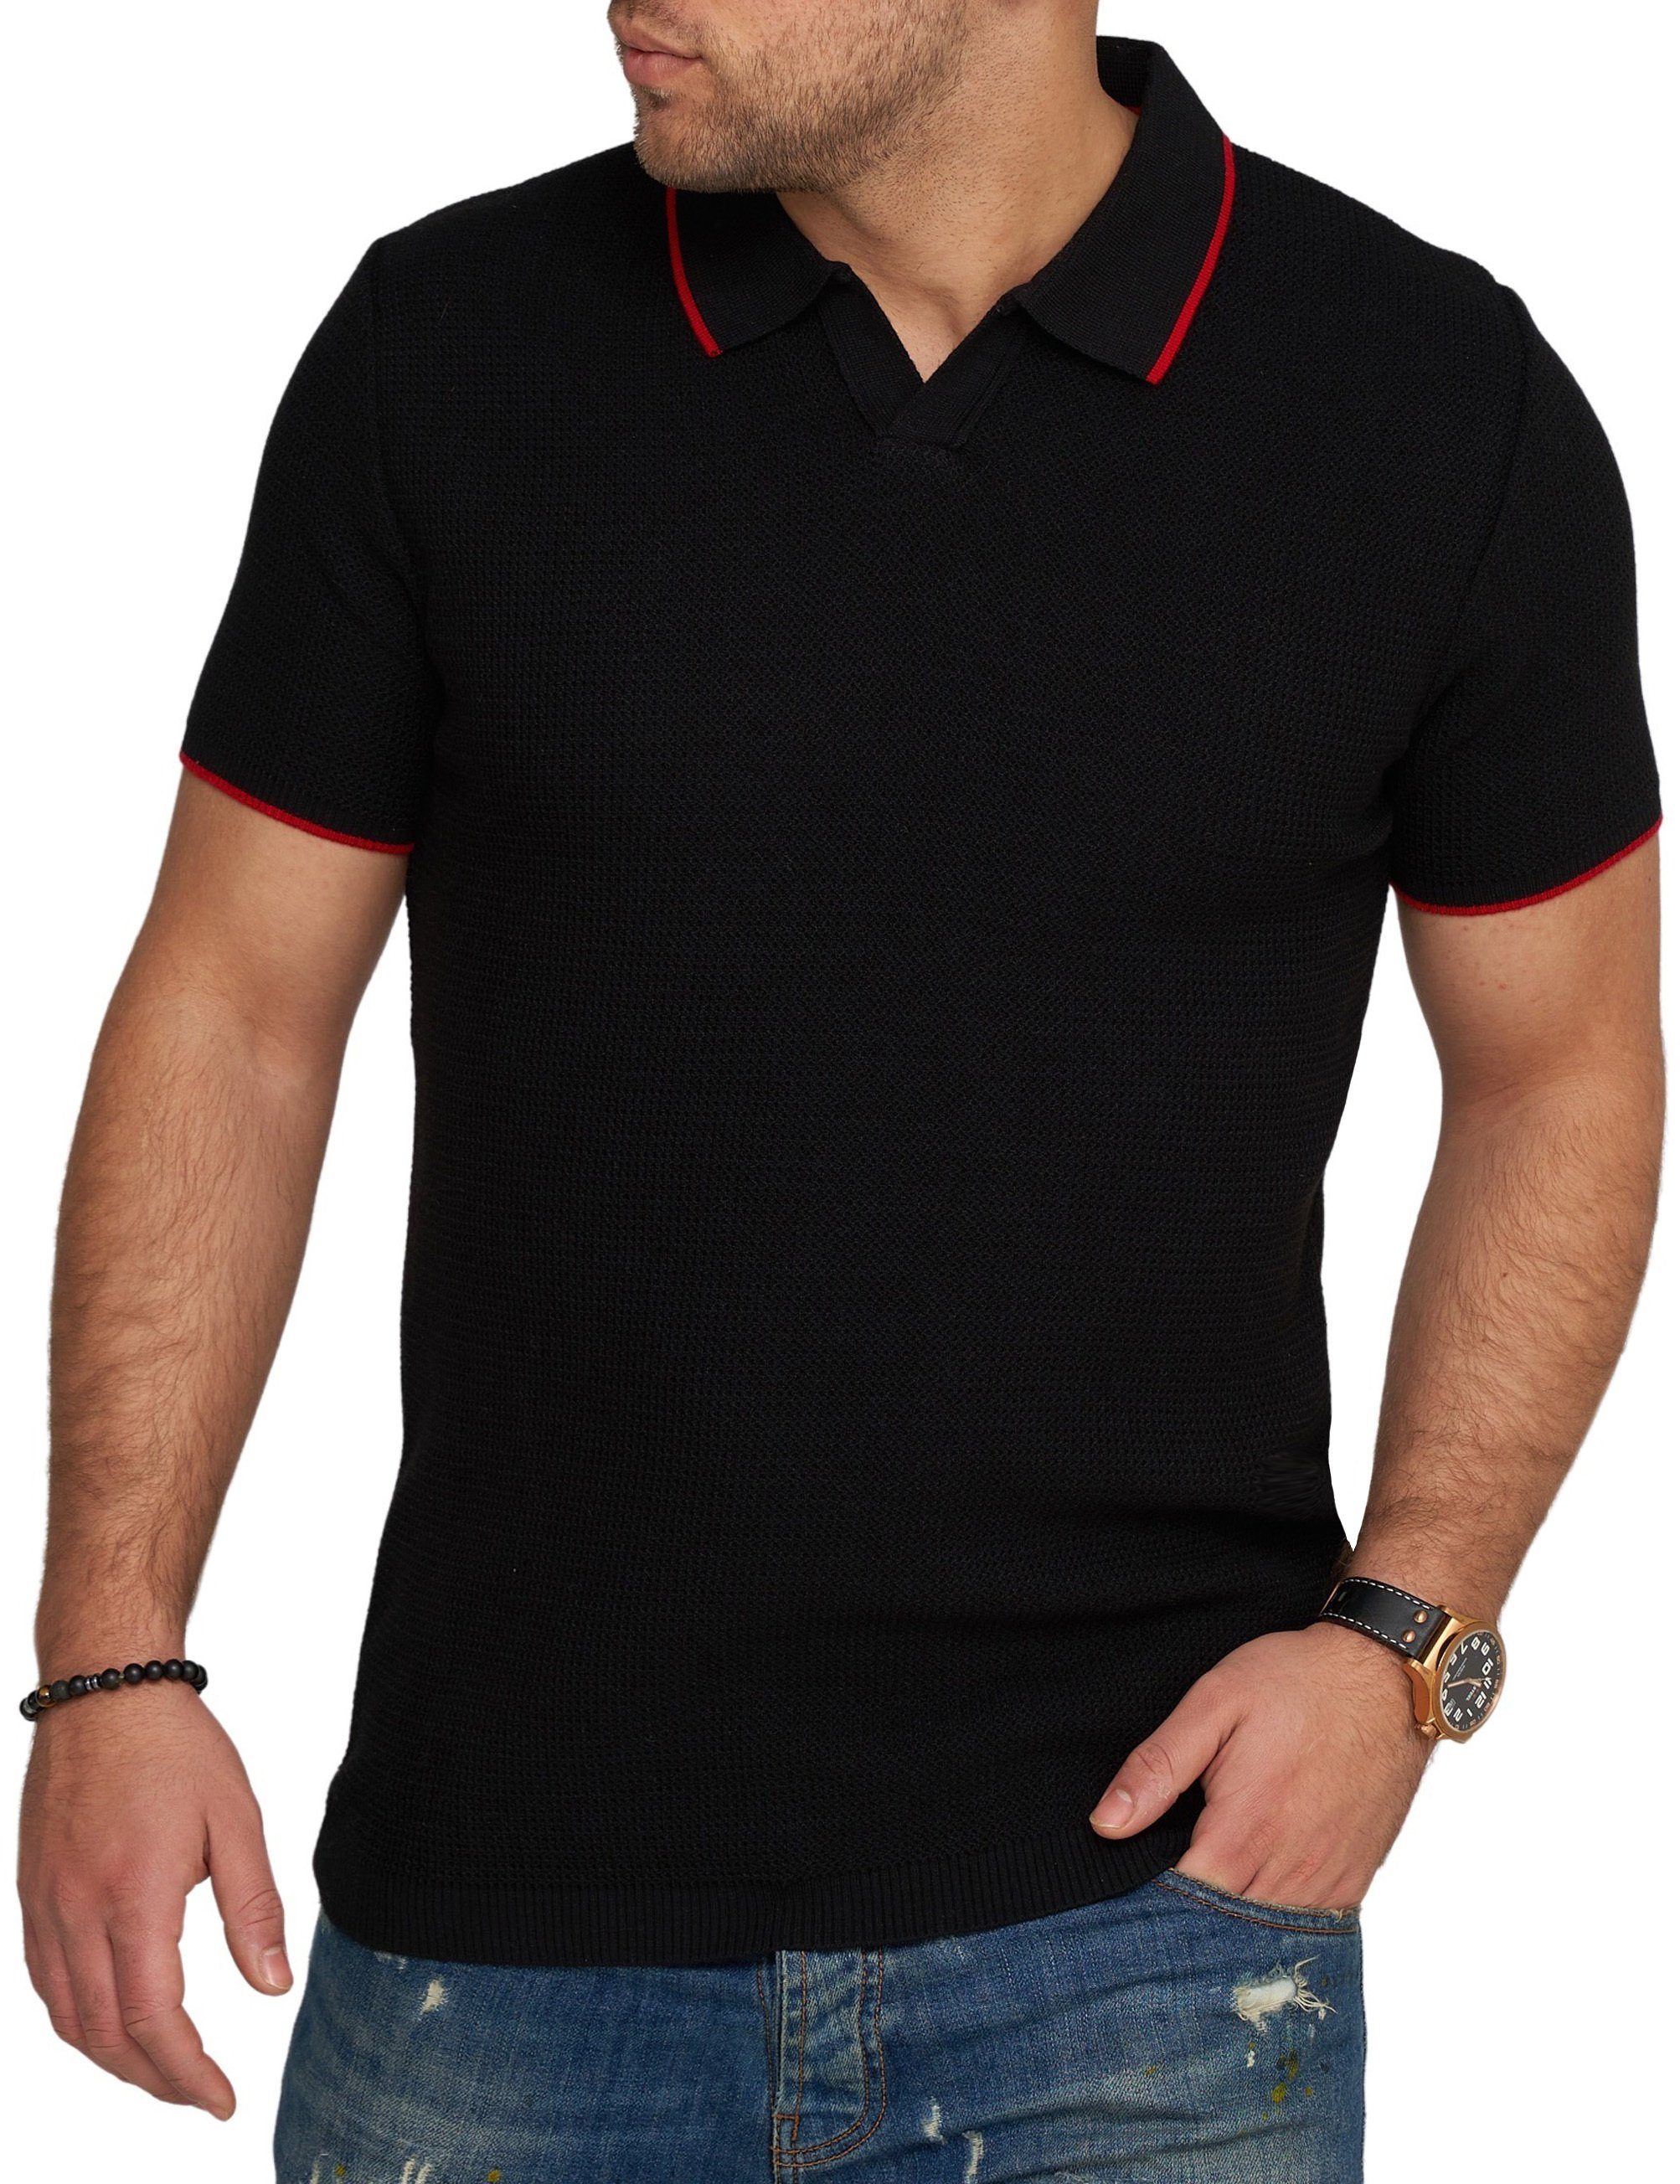 CARISMA CRCANOAS T-Shirt Strick Polo Schwarz Kurzarm Poloshirt